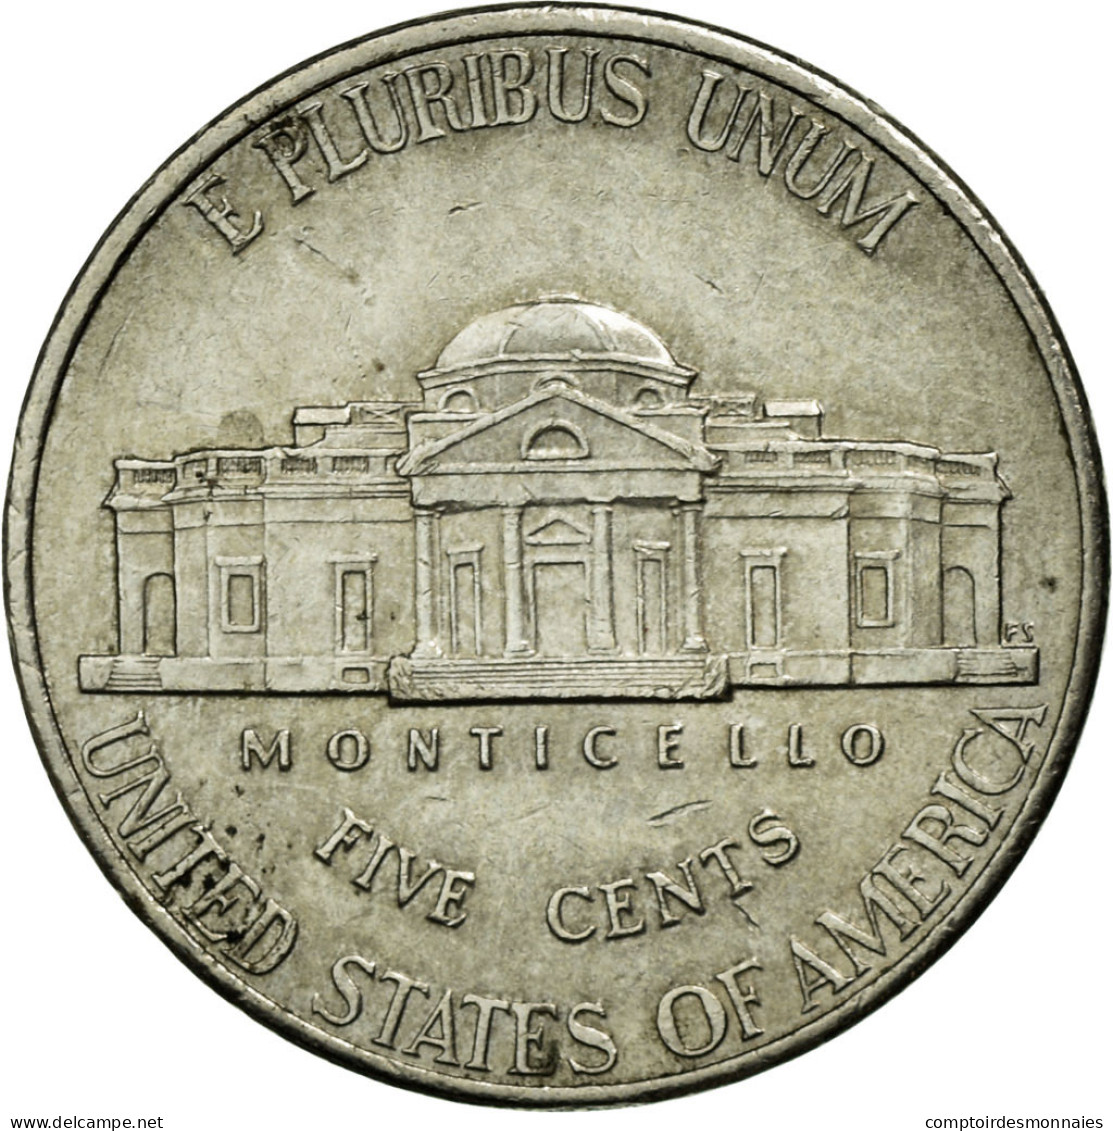 Monnaie, États-Unis, Jefferson Large Facing Portrait - Enhanced Monticello - 1938-…: Jefferson